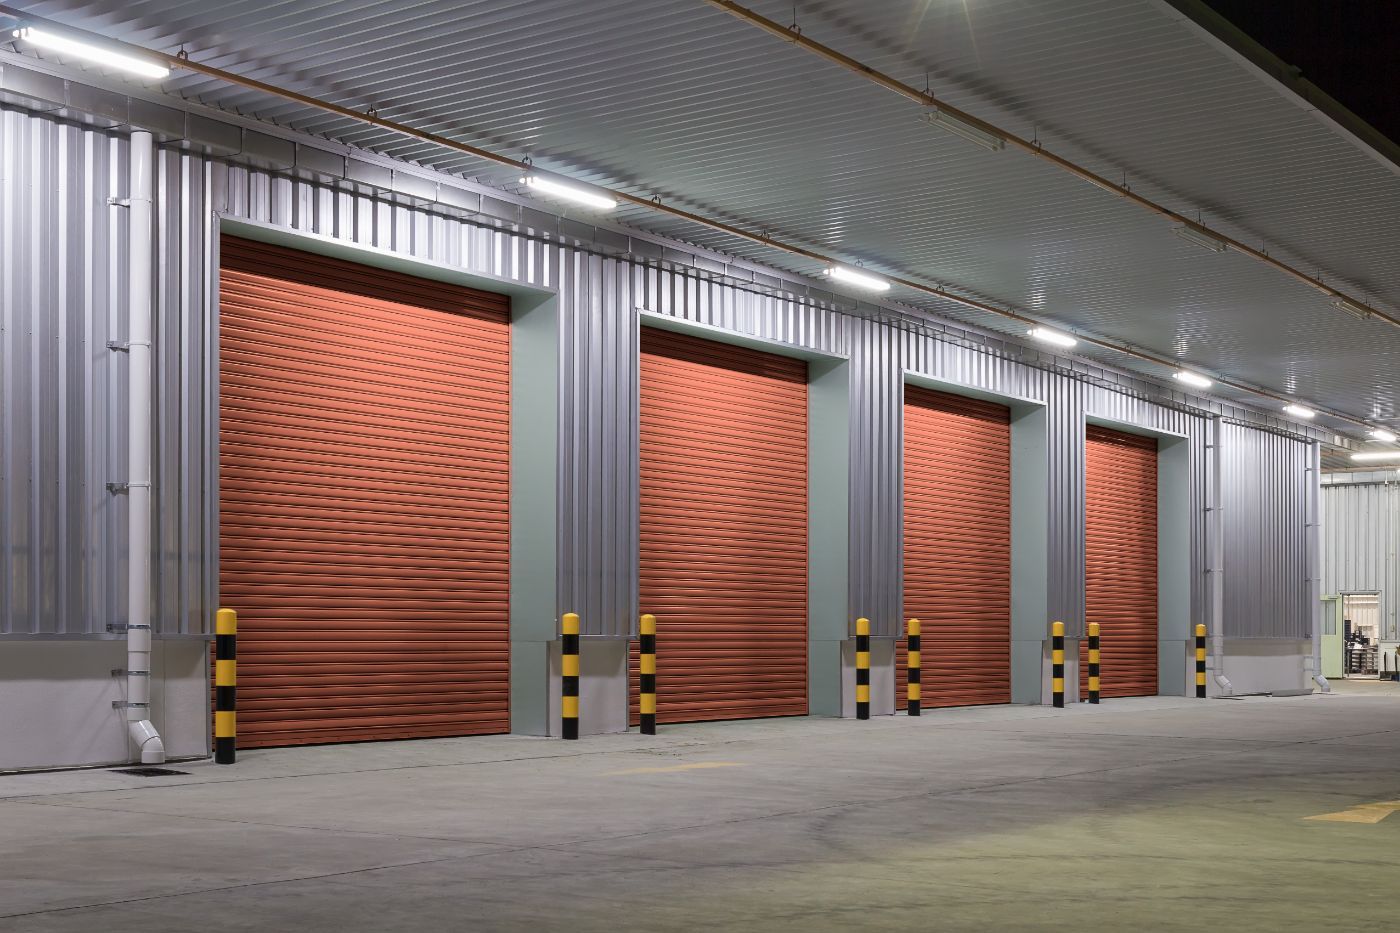 New commercial garage doors